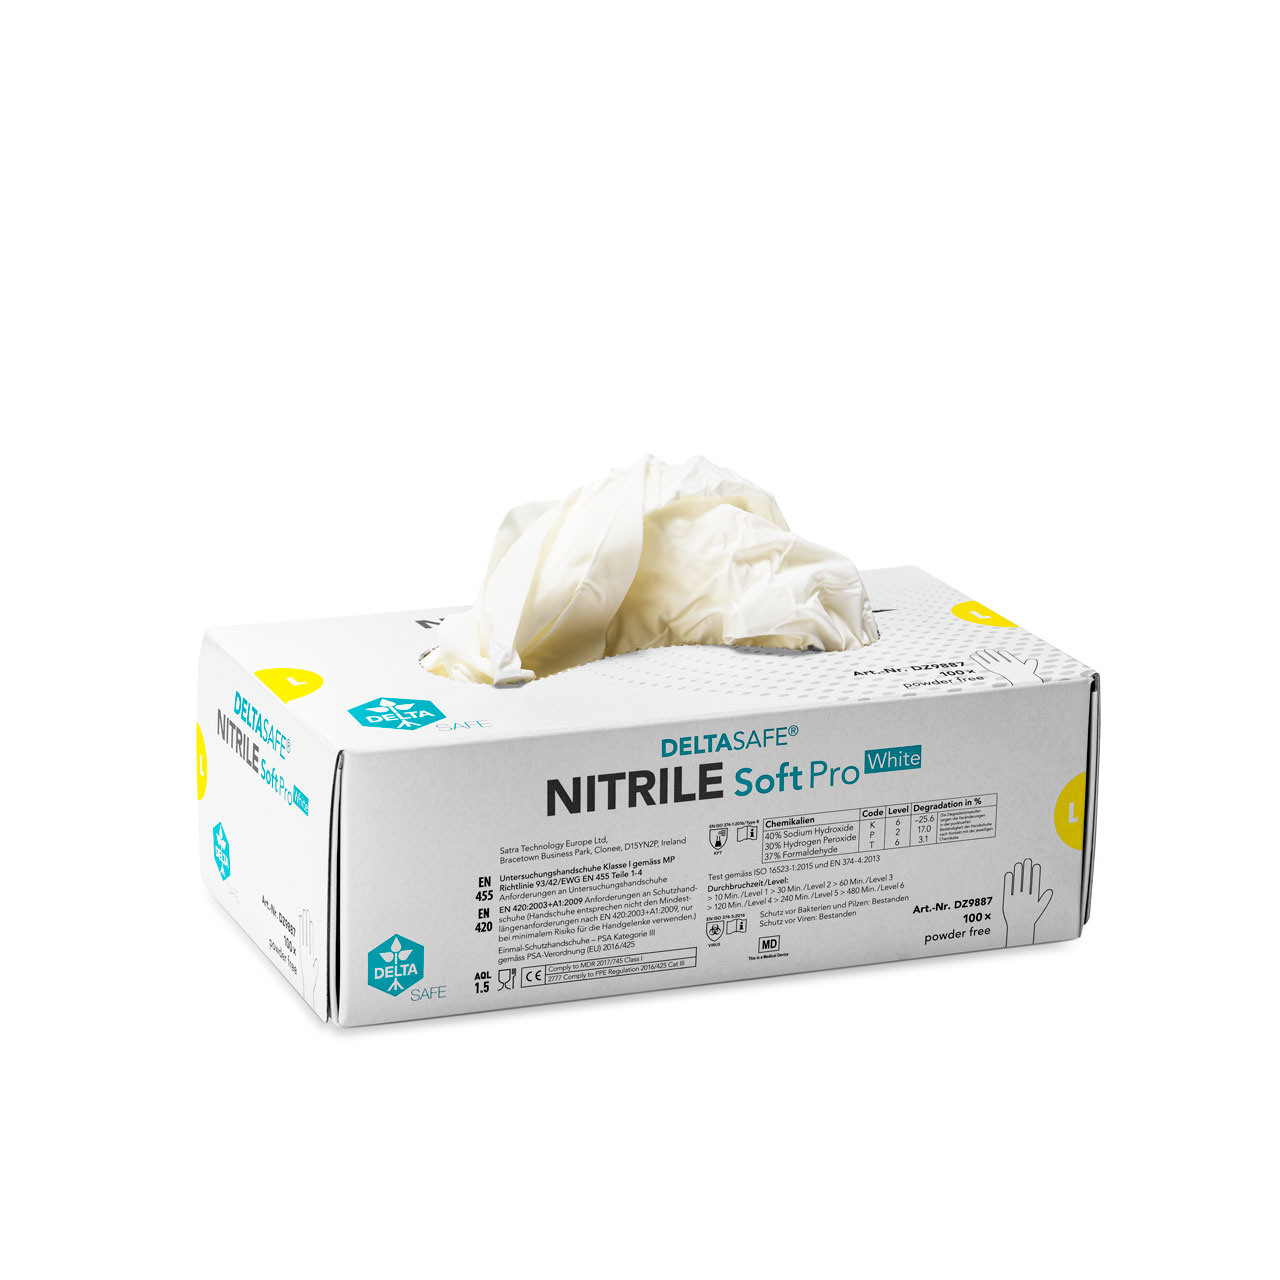 DELTASAFE® NITRILE Soft Pro White, 240 mm, L